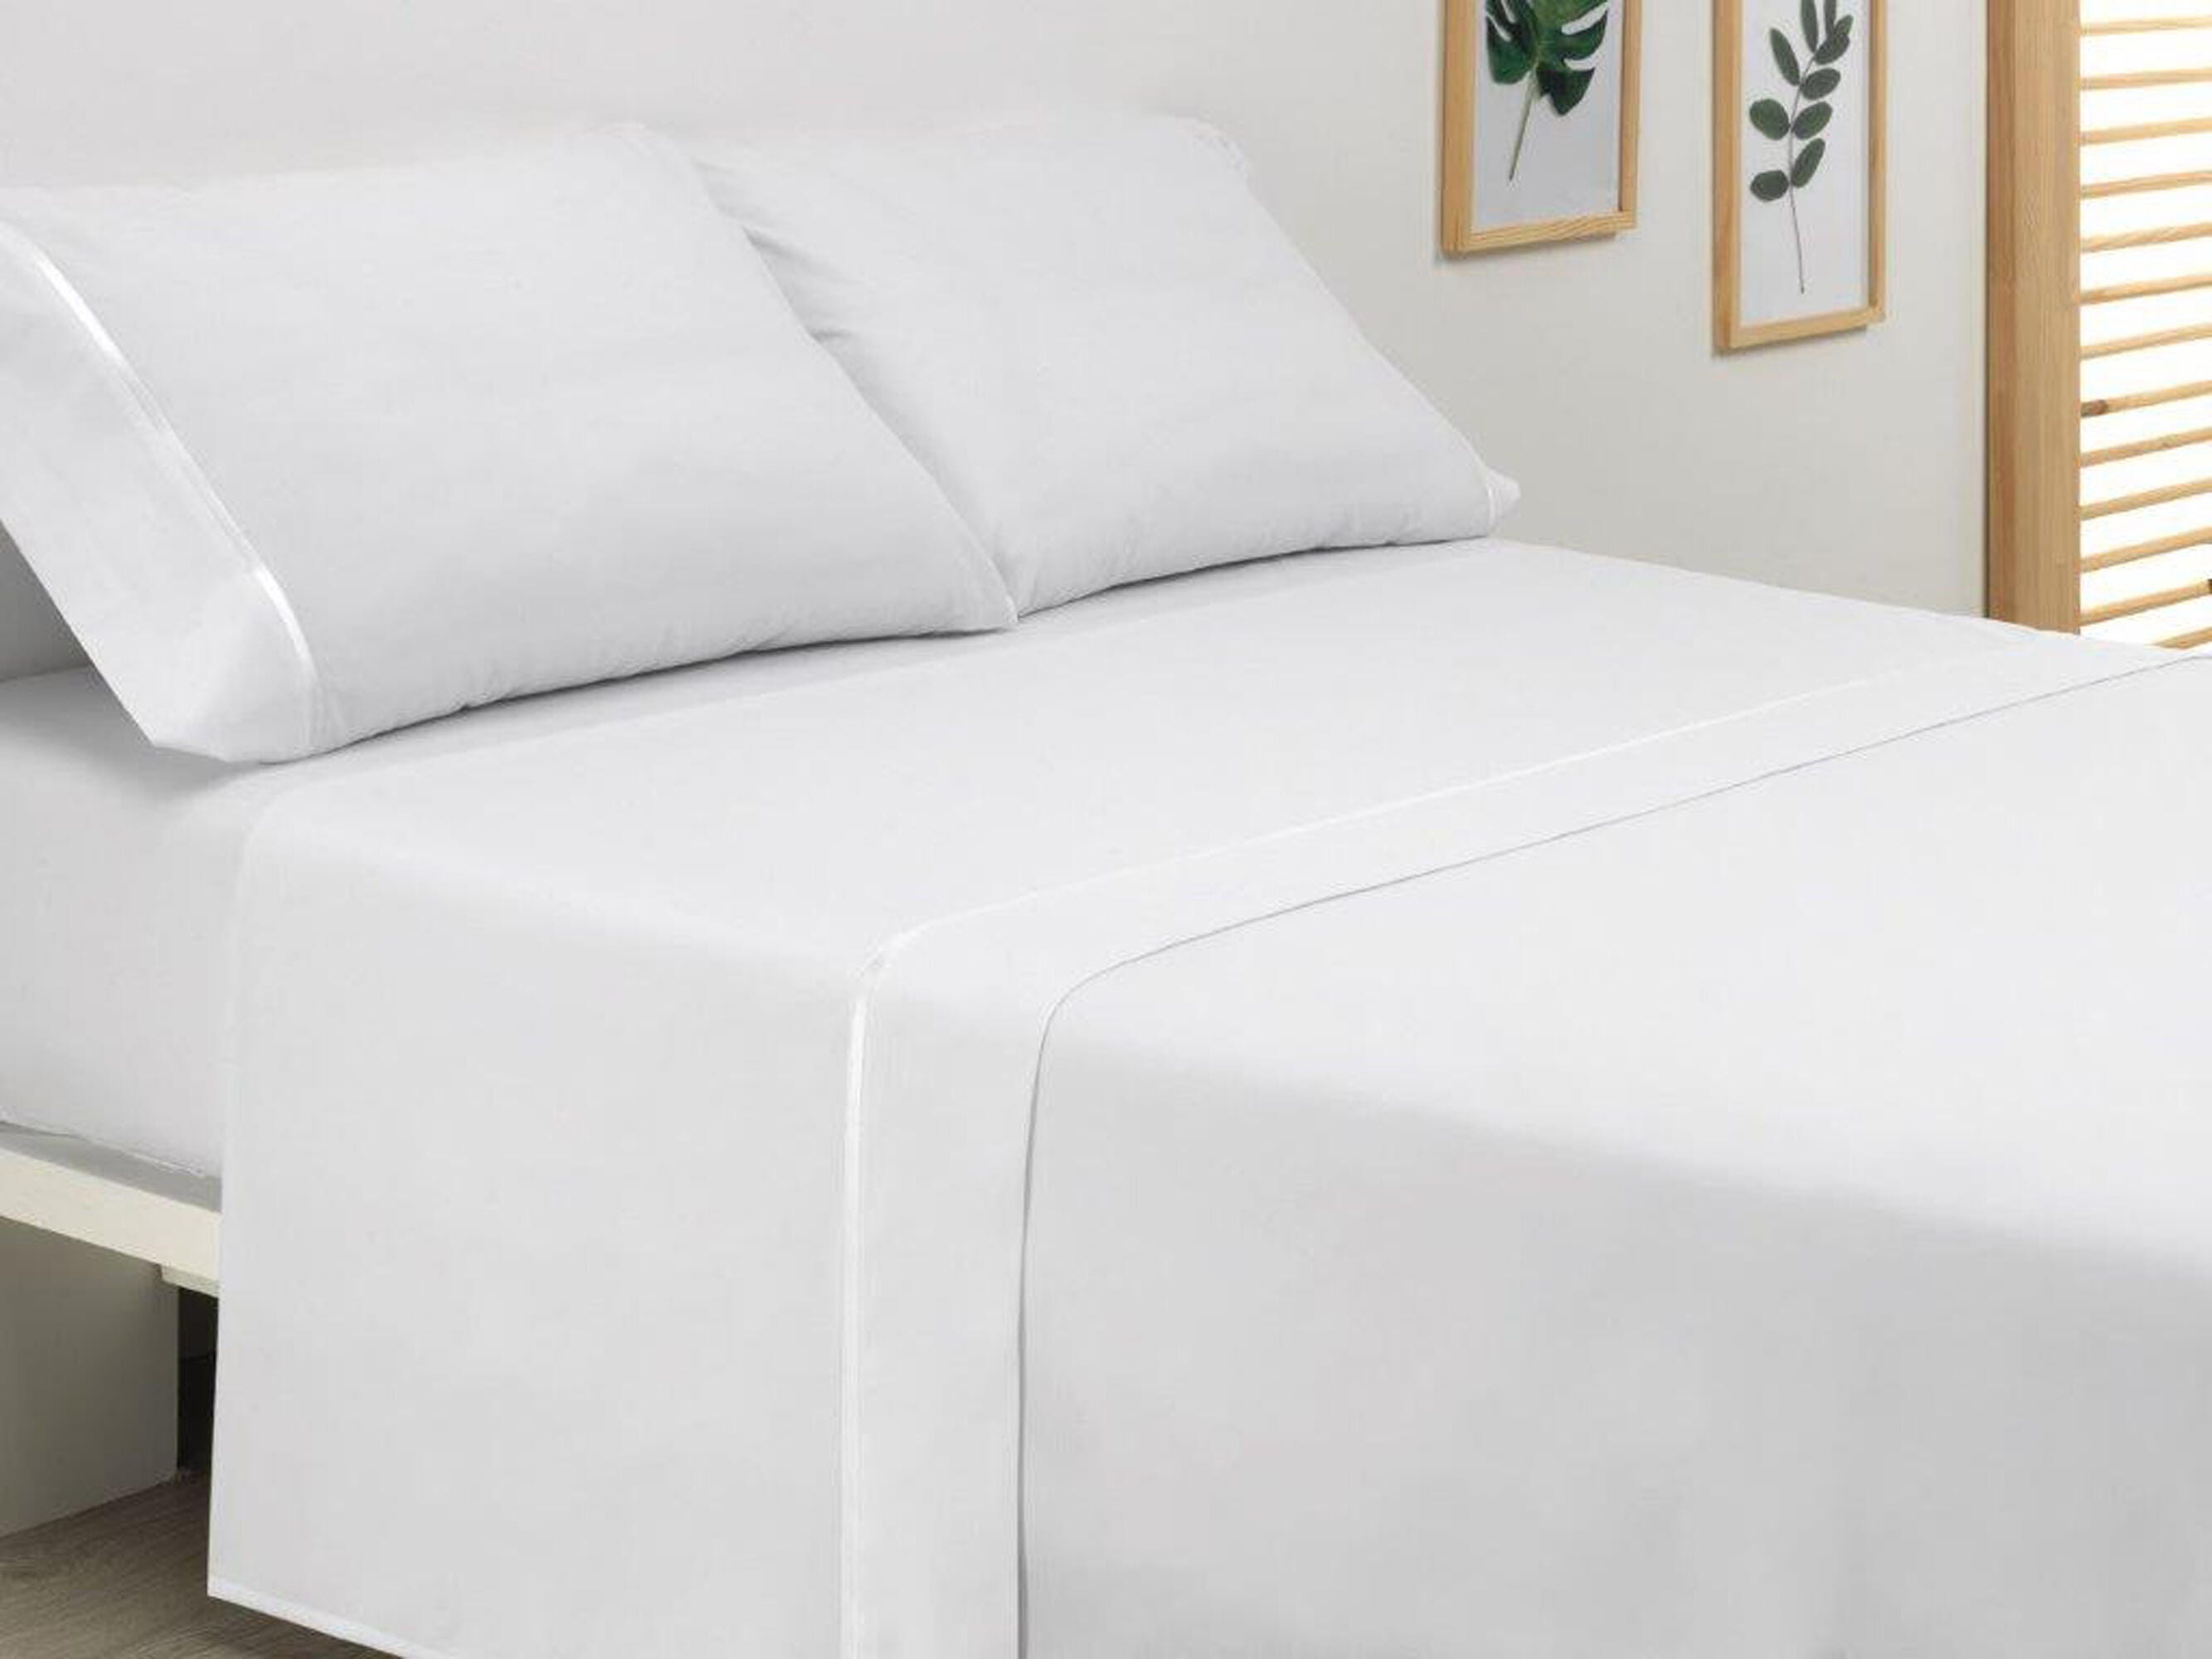 2 Fundas de almohada blanca detalle satén de 75 x 50 cm